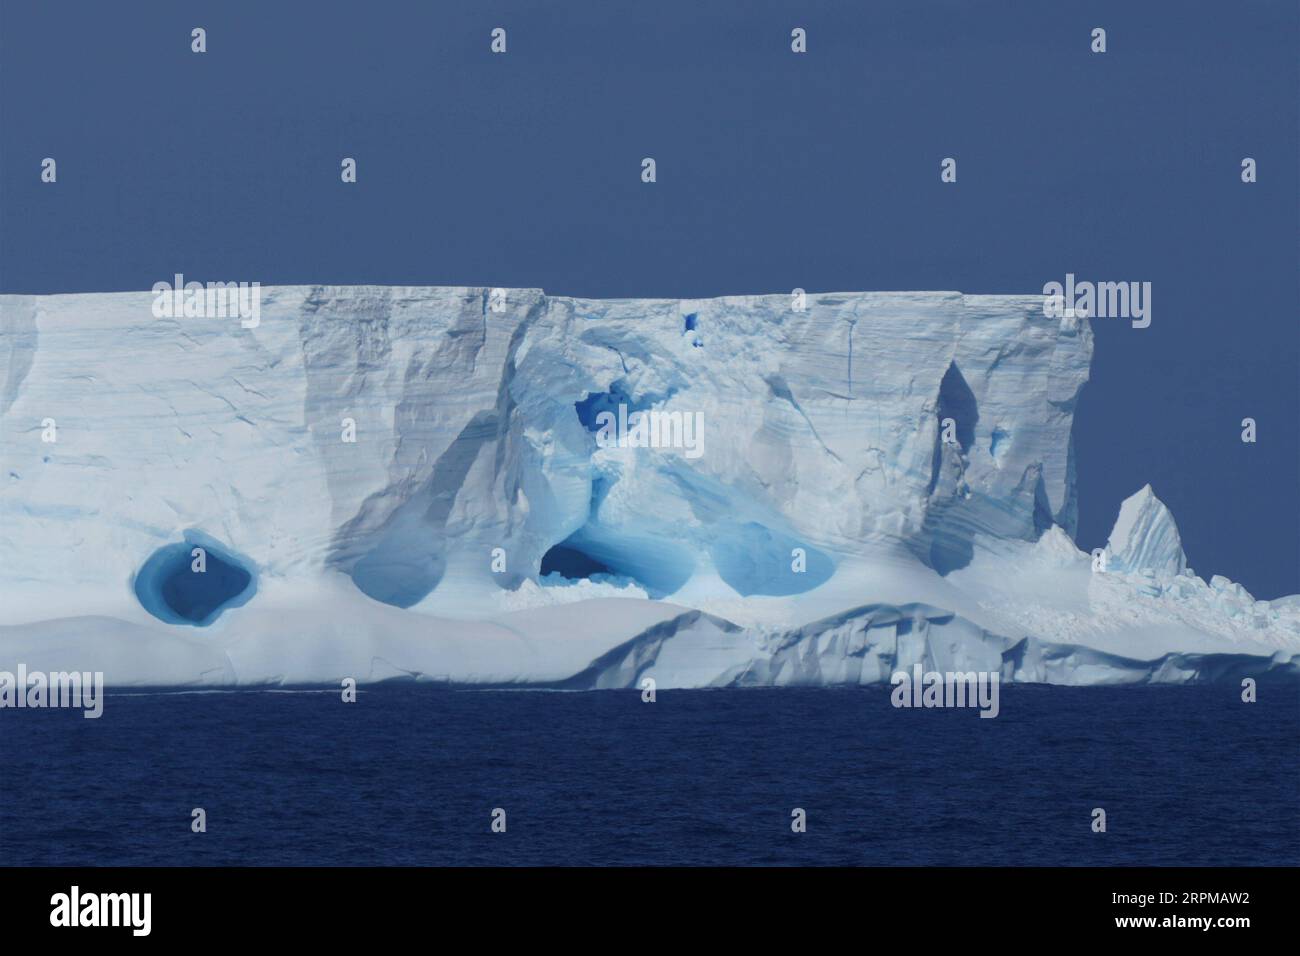 200206 -- AN BORD VON XUELONG 2, 6. Februar 2020 -- Foto vom 1. Februar 2020 zeigt einen Eisberg, der von Chinas polarem Eisbrecher Xuelong 2 oder Snow Dragon 2 aus gesehen wurde, der während der 36. Antarktis-Expedition auf dem Weddell-Meer zur chinesischen Zhongshan-Station fährt. EyesonSci CHINA-XUELONG 2-WEDDELL SEA CN LiuxShiping PUBLICATIONxNOTxINxCHN Stockfoto